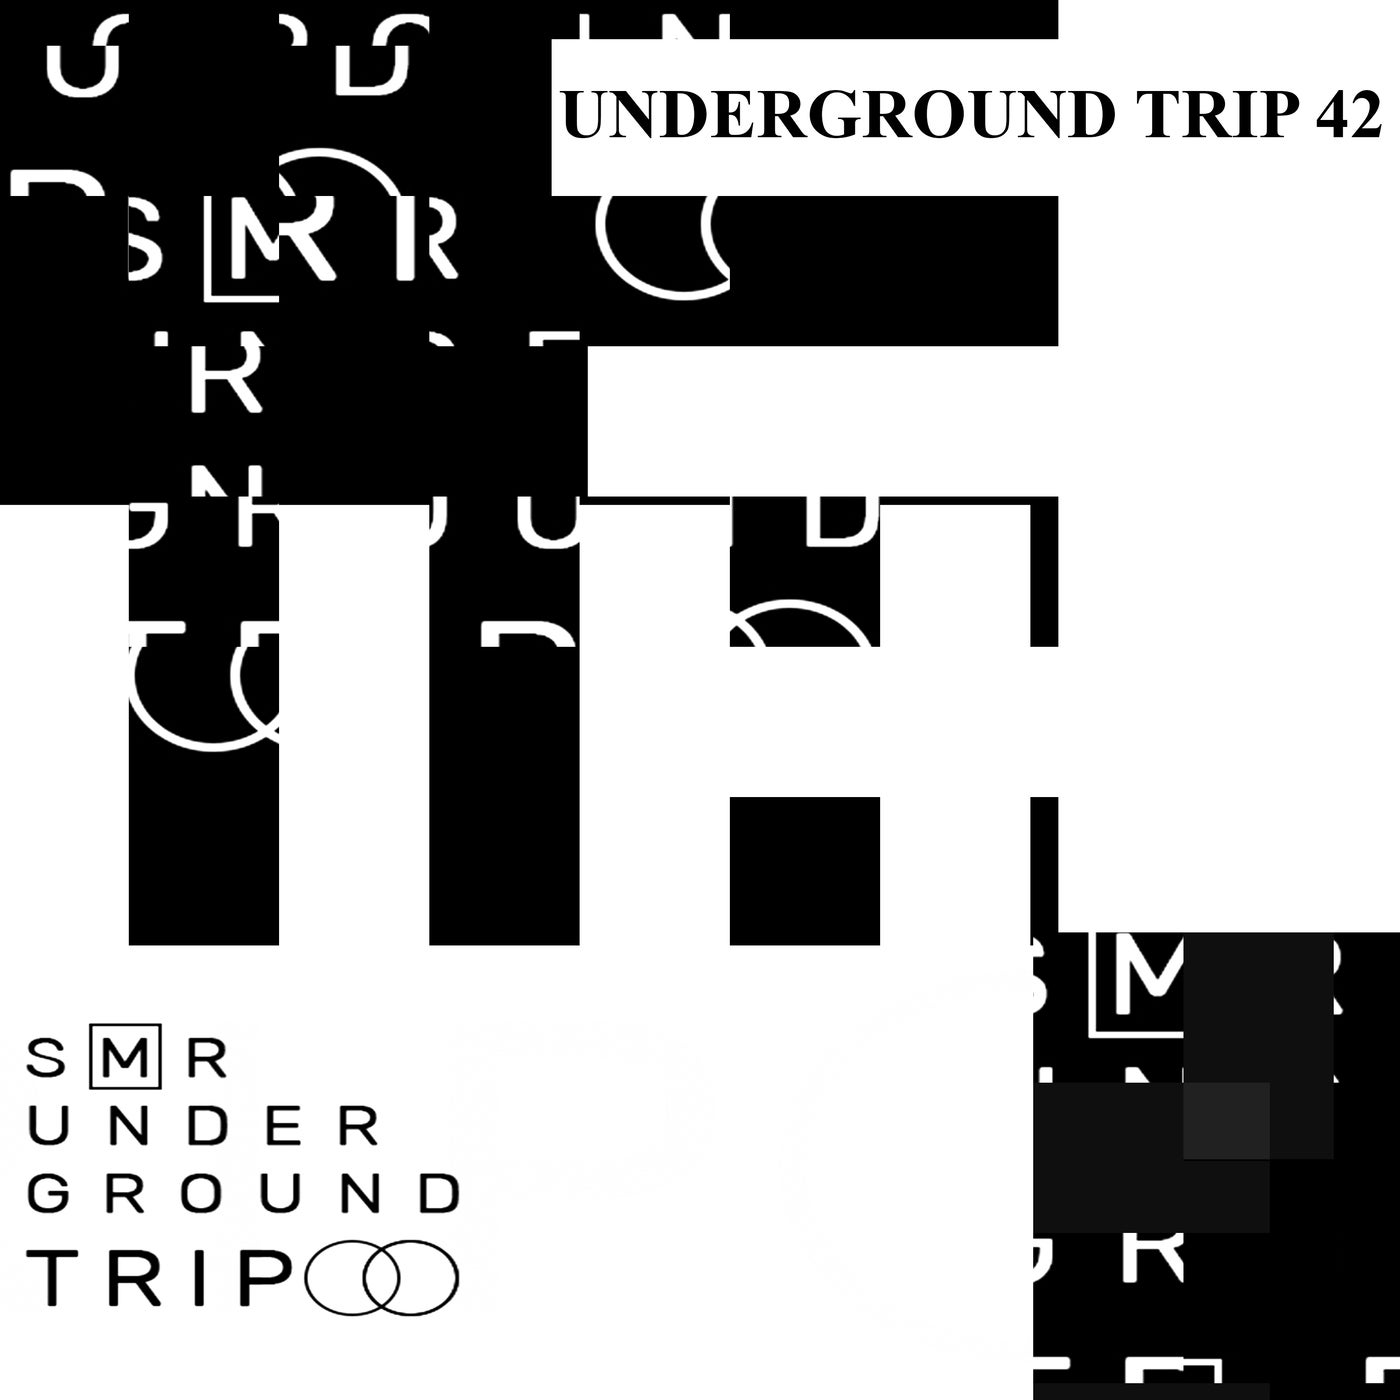 Don Lockwood, Drobzynski - Underground TriP 42 [SMR Underground Trip]